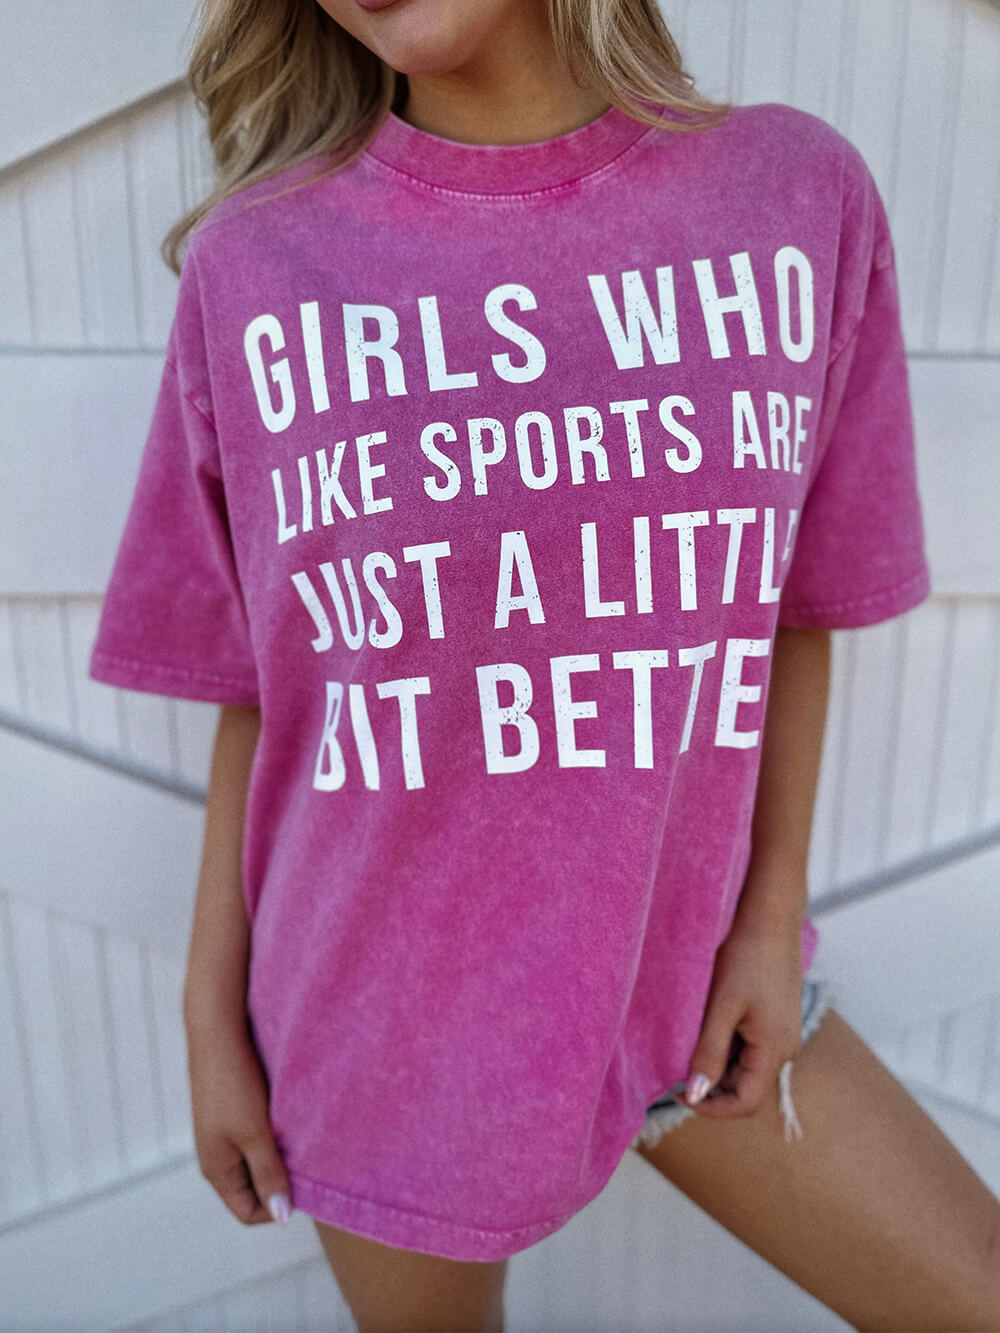 Meninas com lavagem mineral que gostam de esportes são um pouco melhores rosa